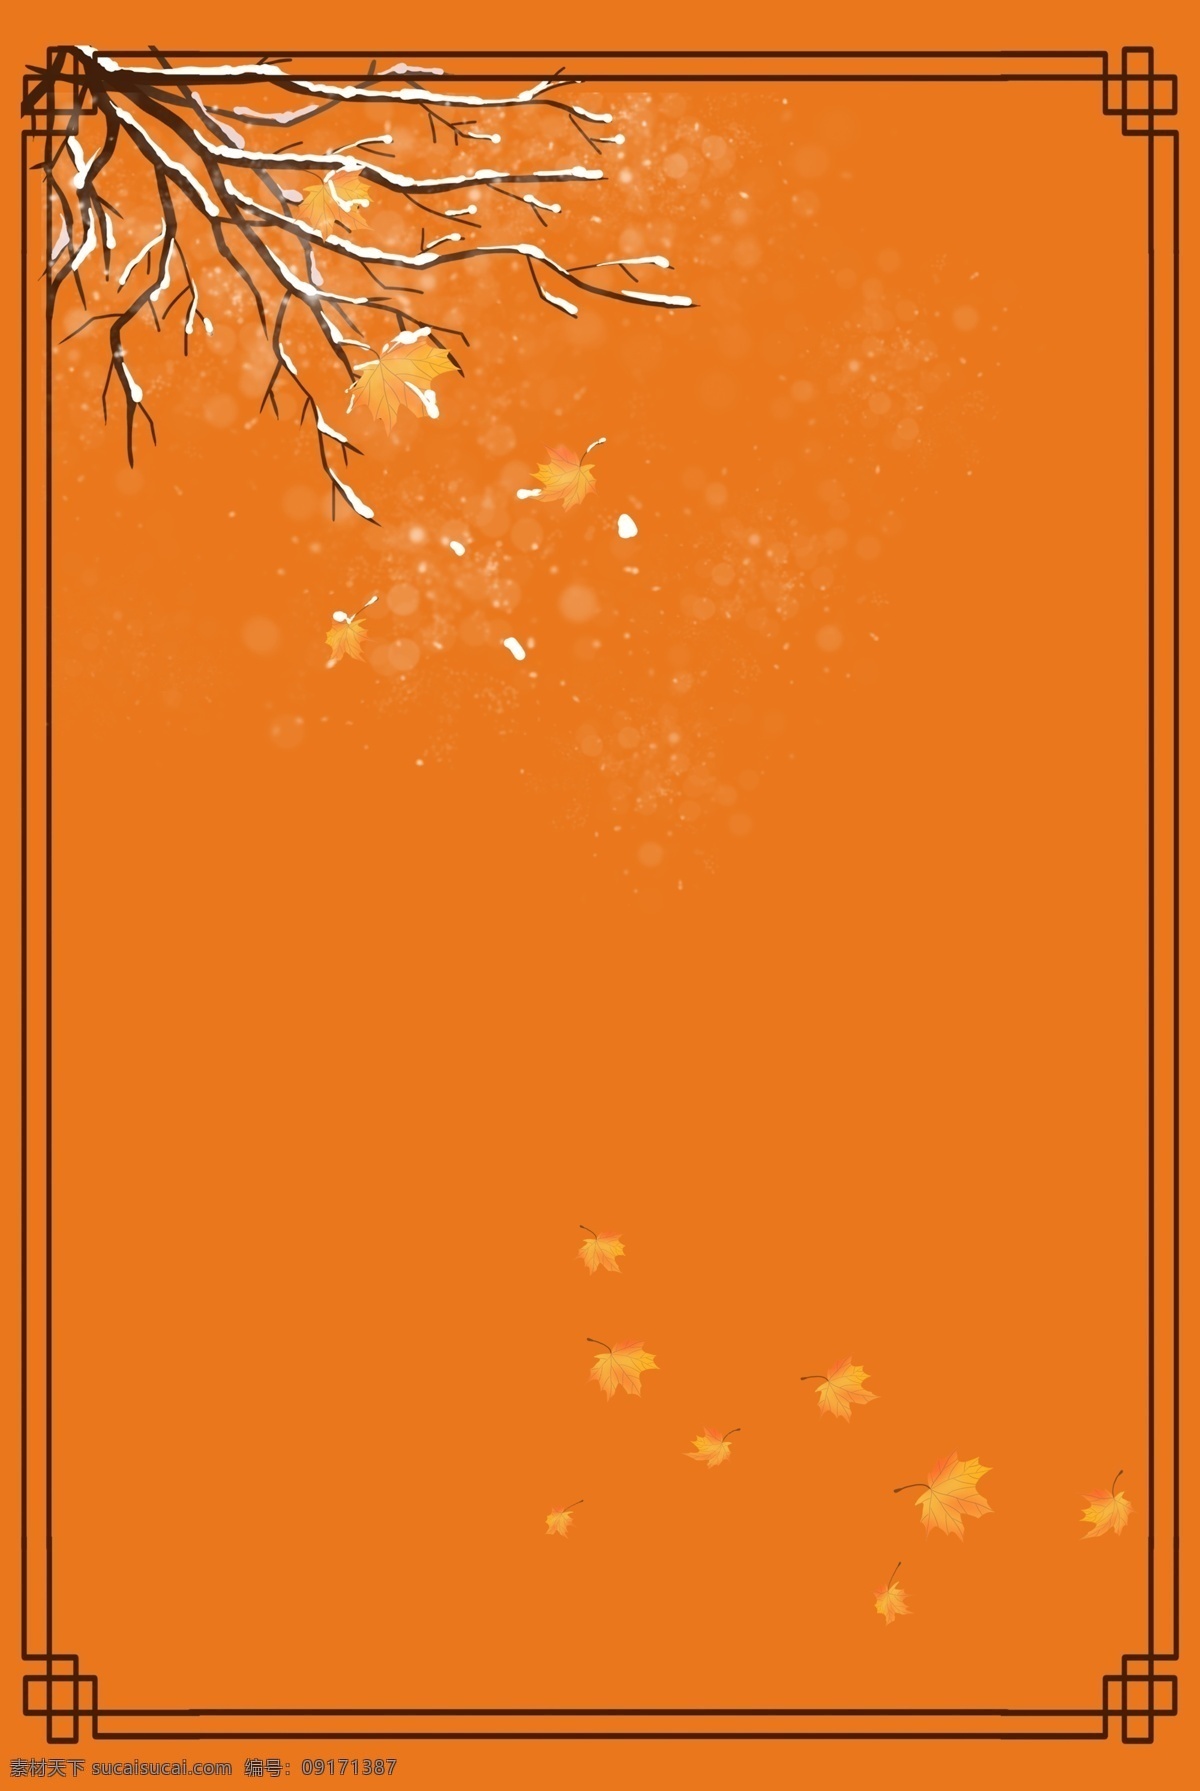 橙色 冬季 下雪 背景 换季 季节 边框 植物 天气 装饰